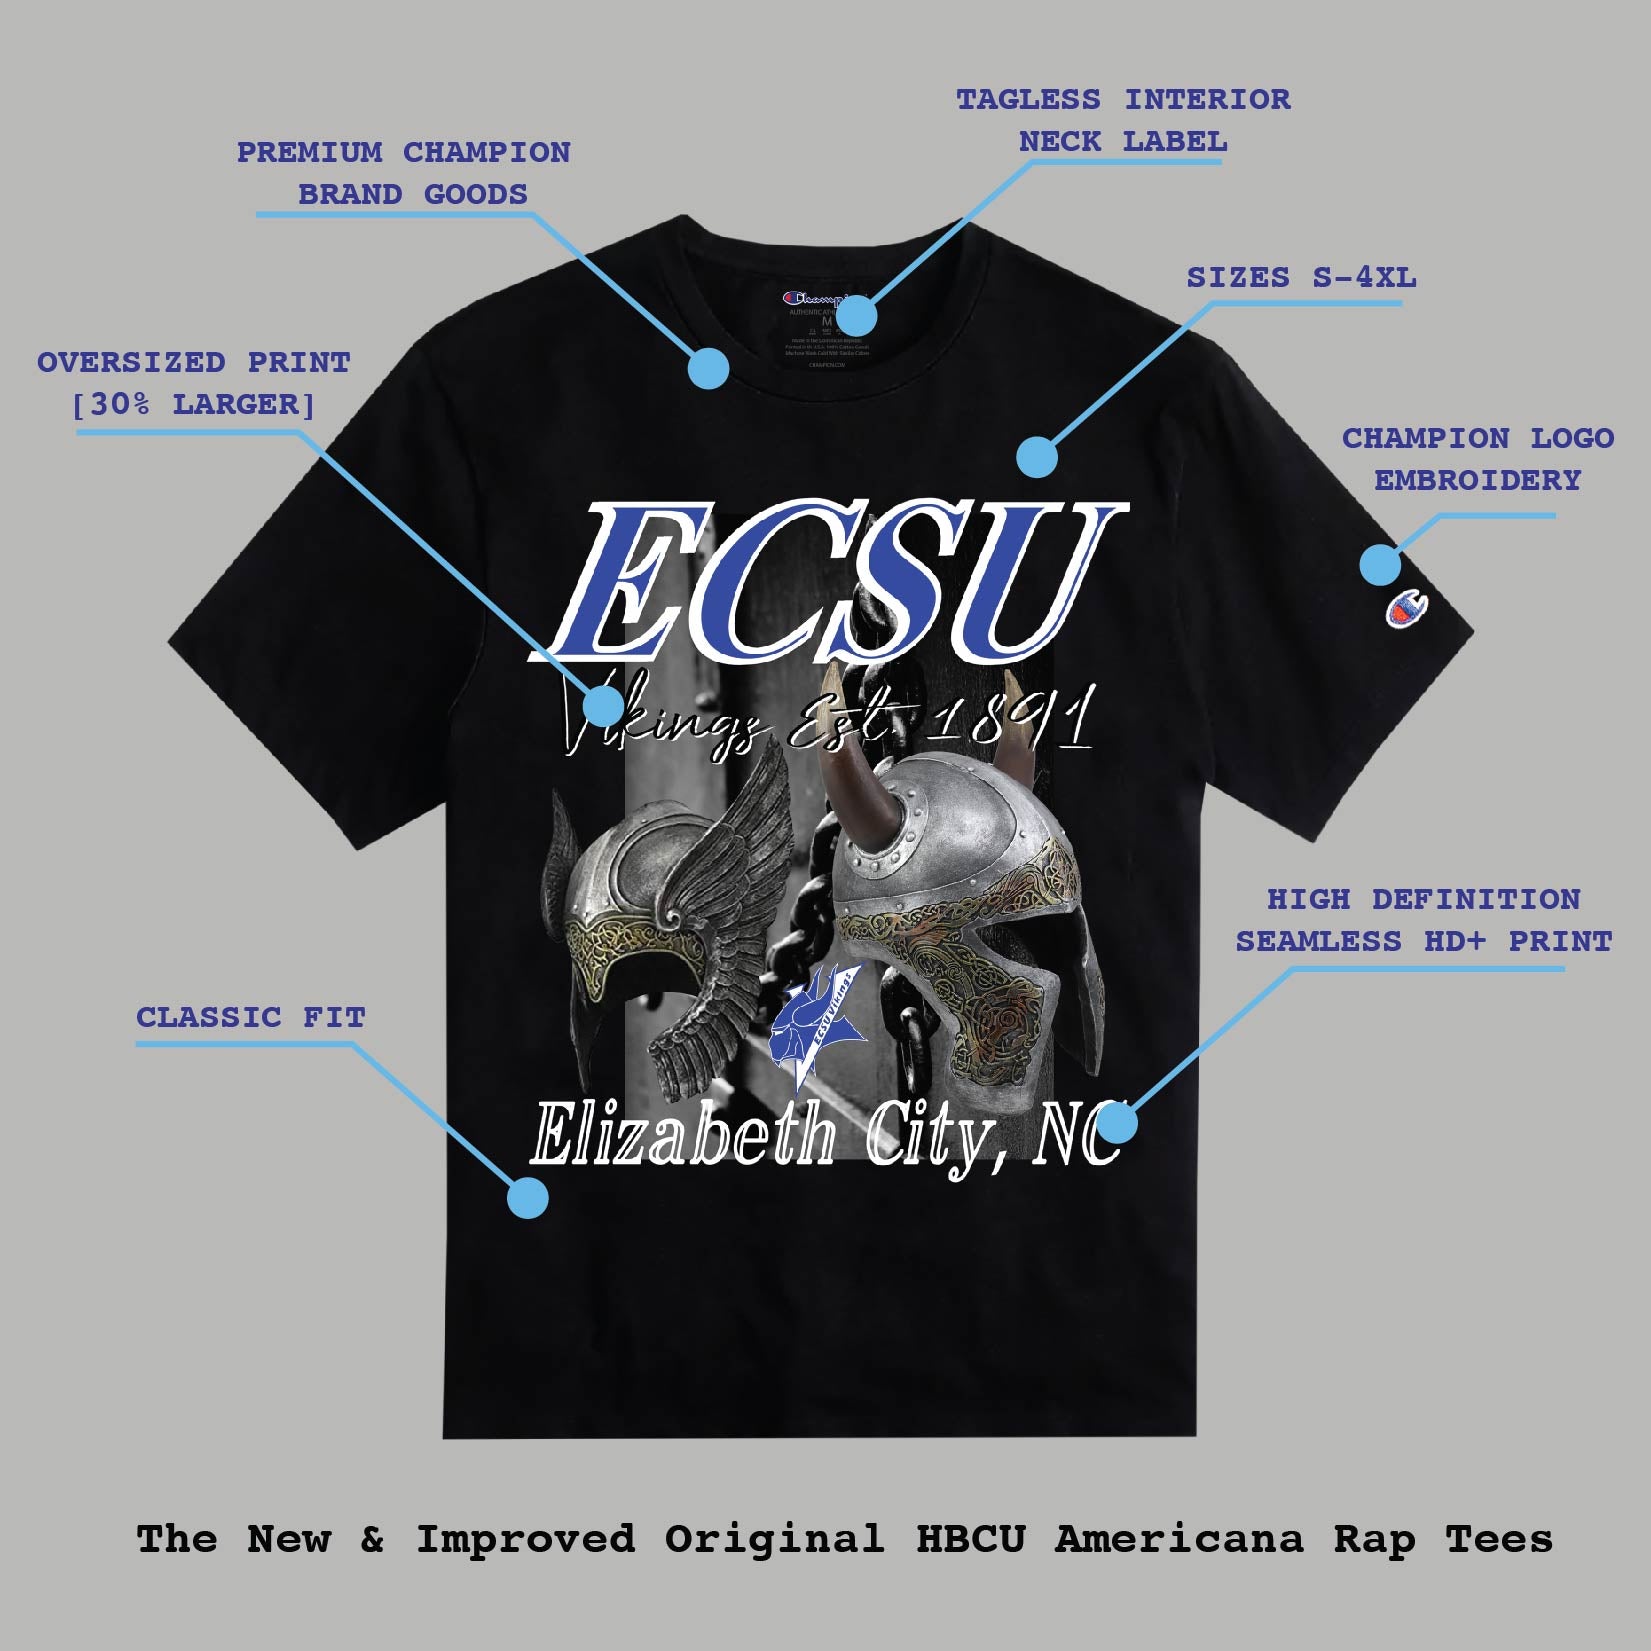 BCU X Champion Original HBCU Americana Rap Tee - Elizabeth City State [ECSU]